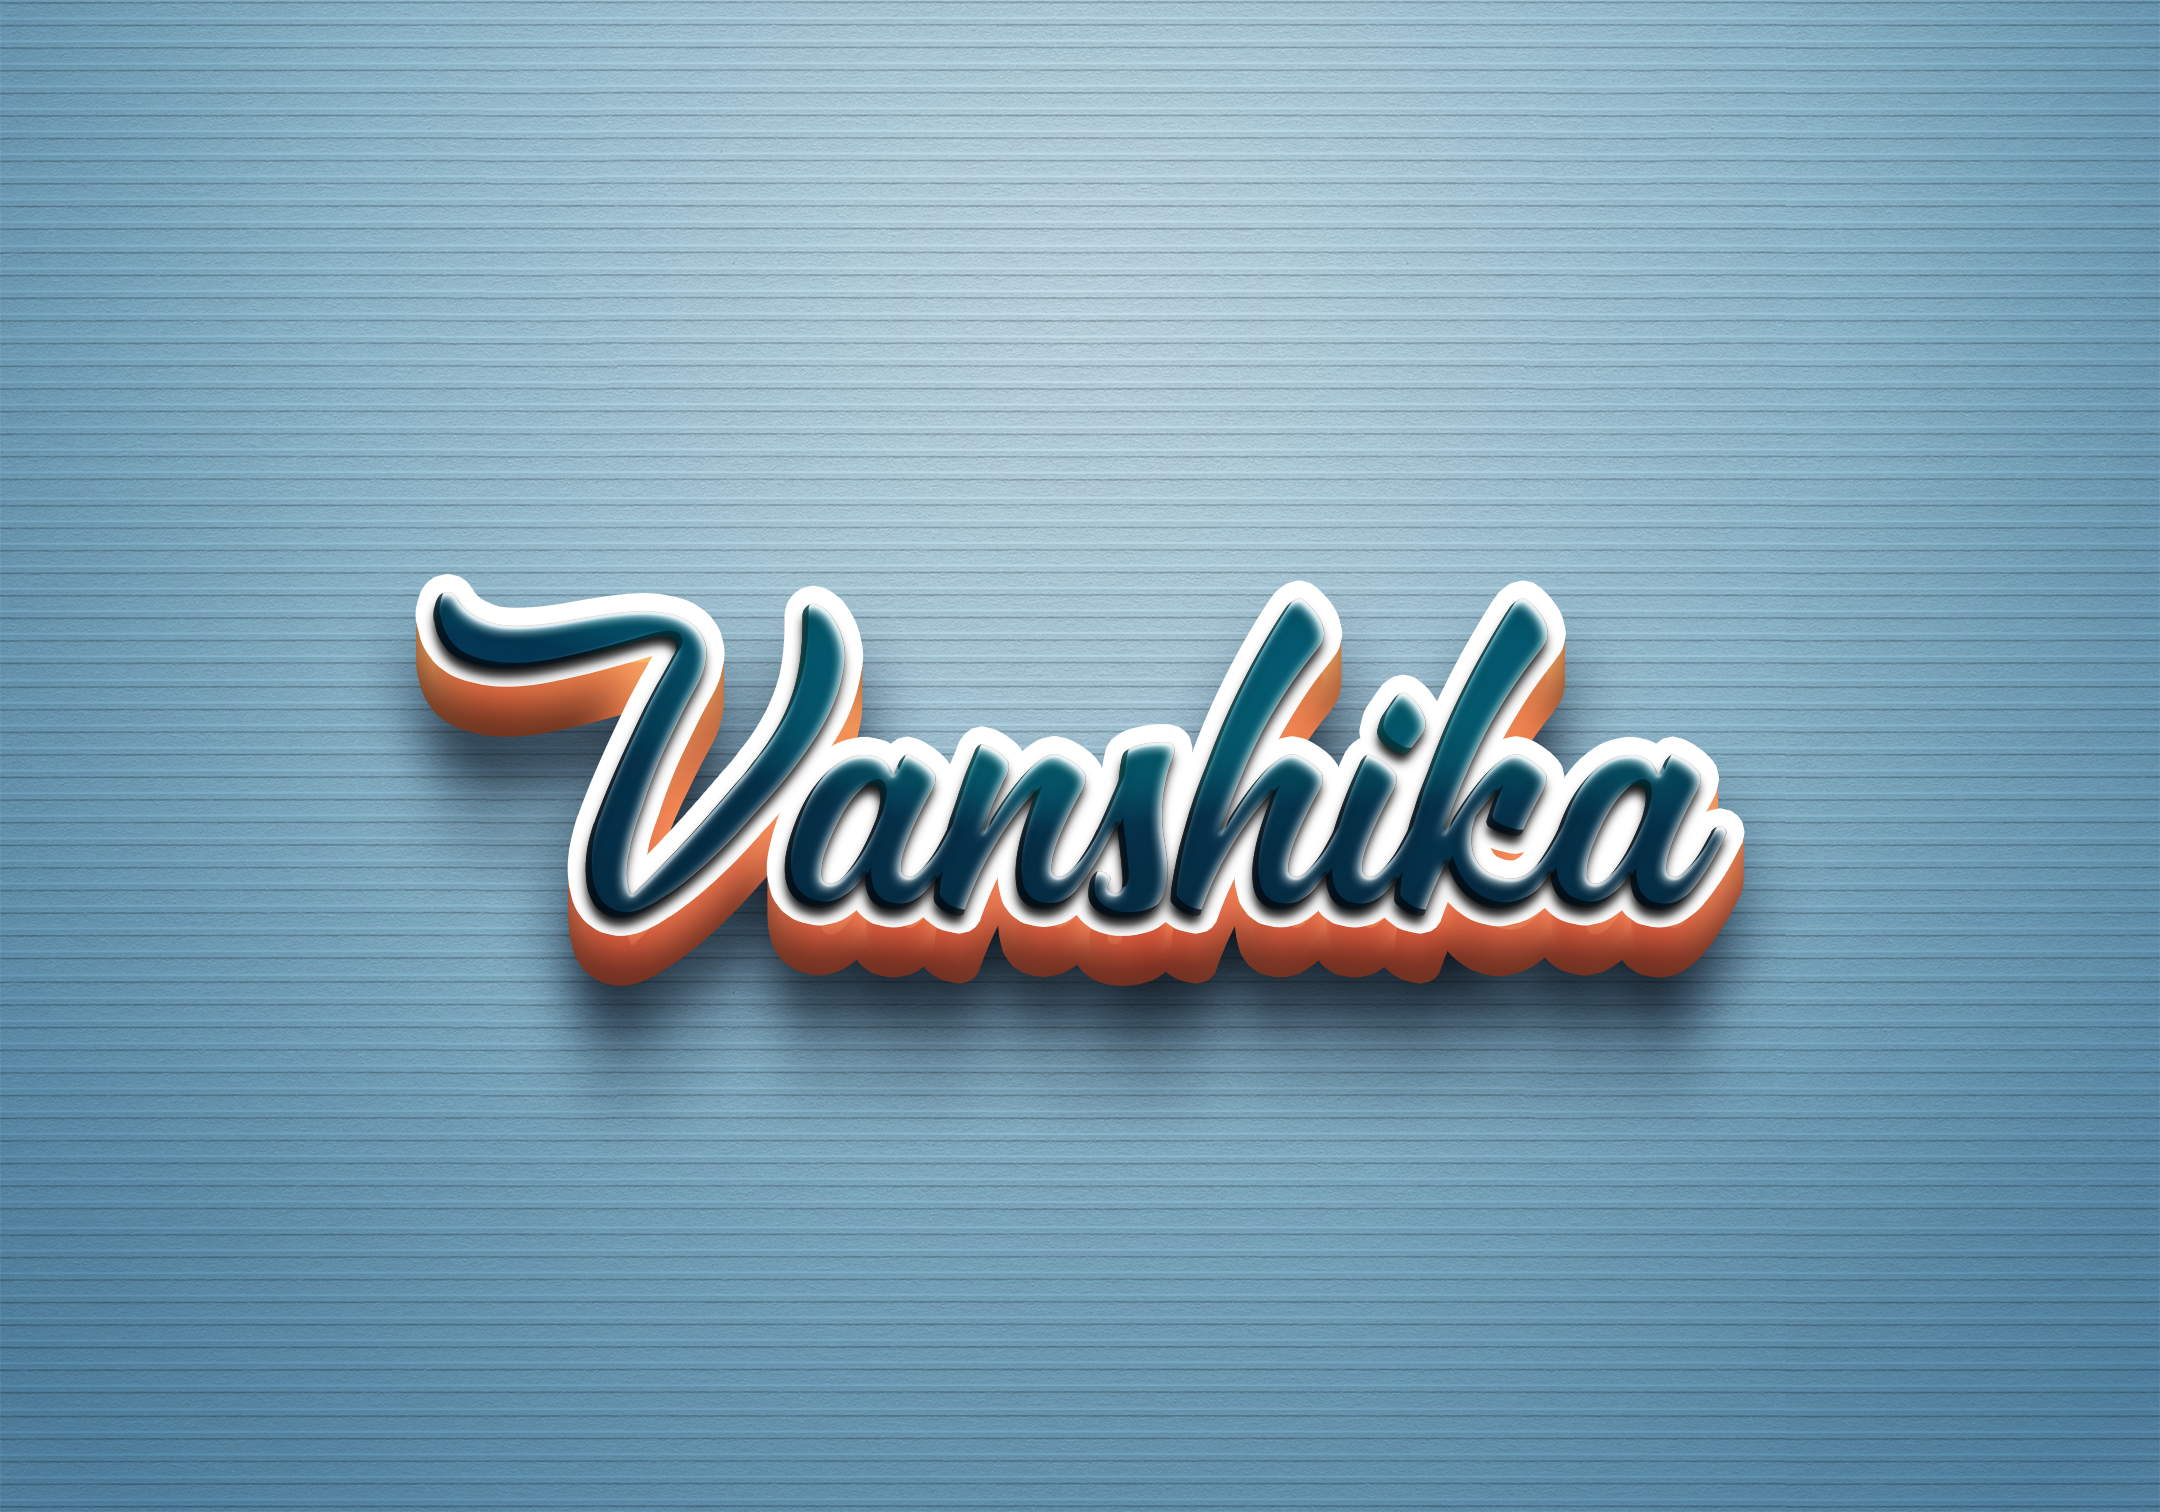 Buy Name Printed Vanshika Name Mug for Coffee White Ceramic Mug (350) ml  Online at Low Prices in India - Amazon.in